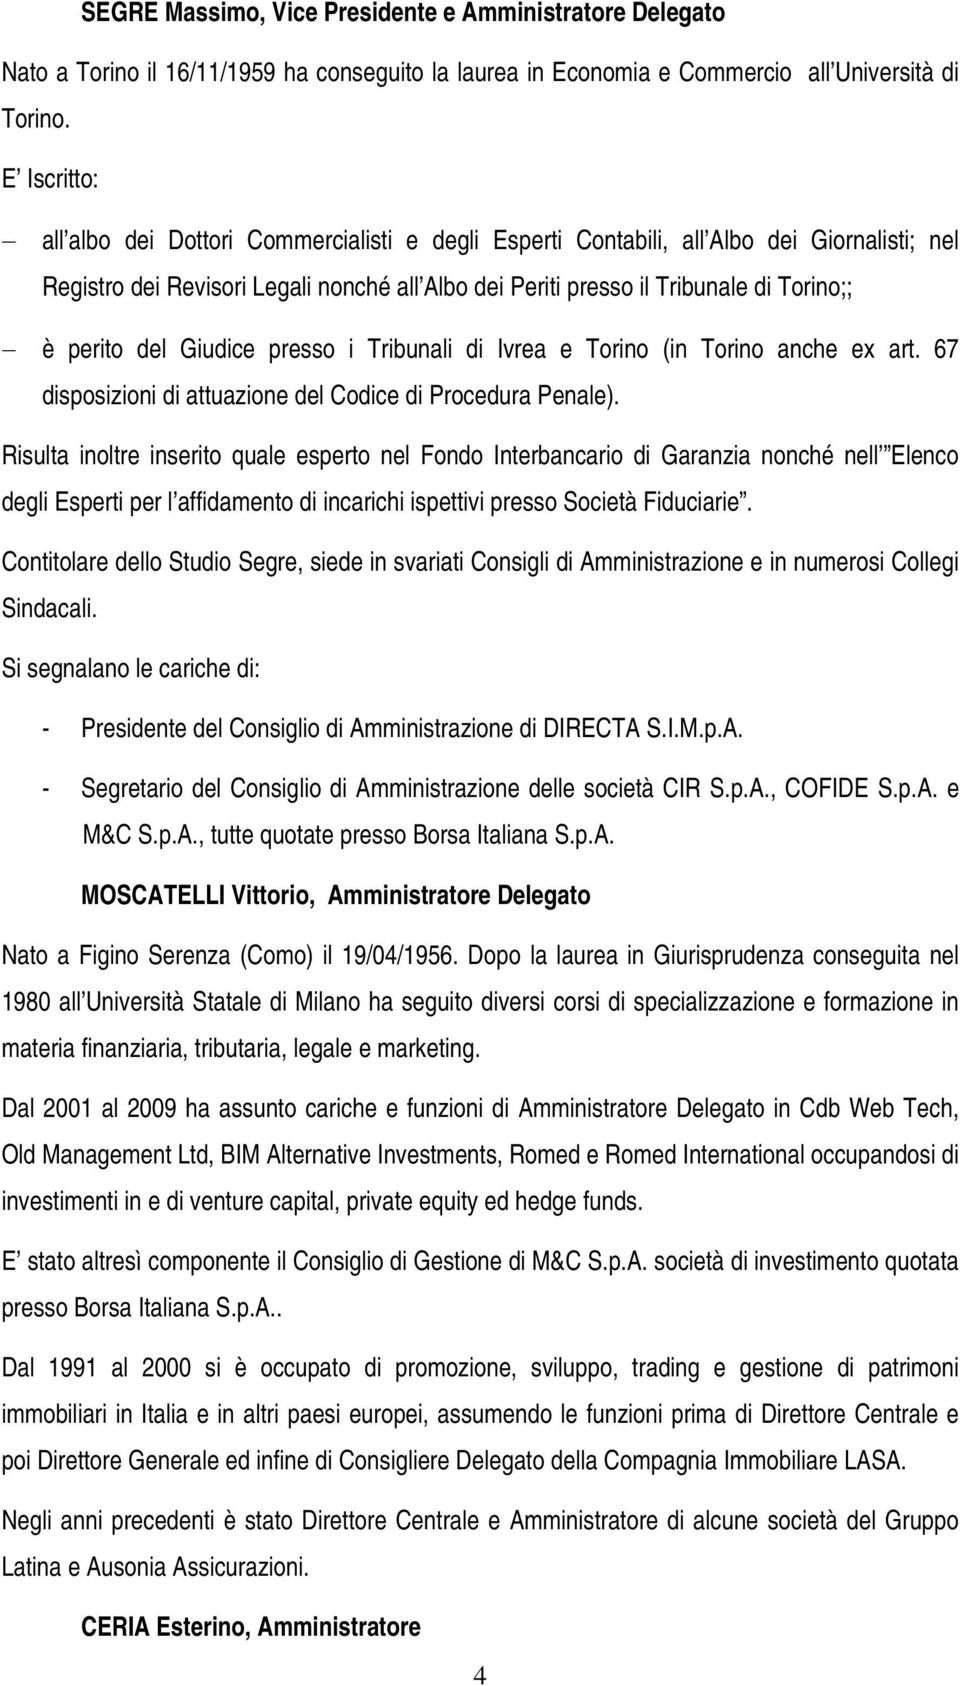 perito del Giudice presso i Tribunali di Ivrea e Torino (in Torino anche ex art. 67 disposizioni di attuazione del Codice di Procedura Penale).